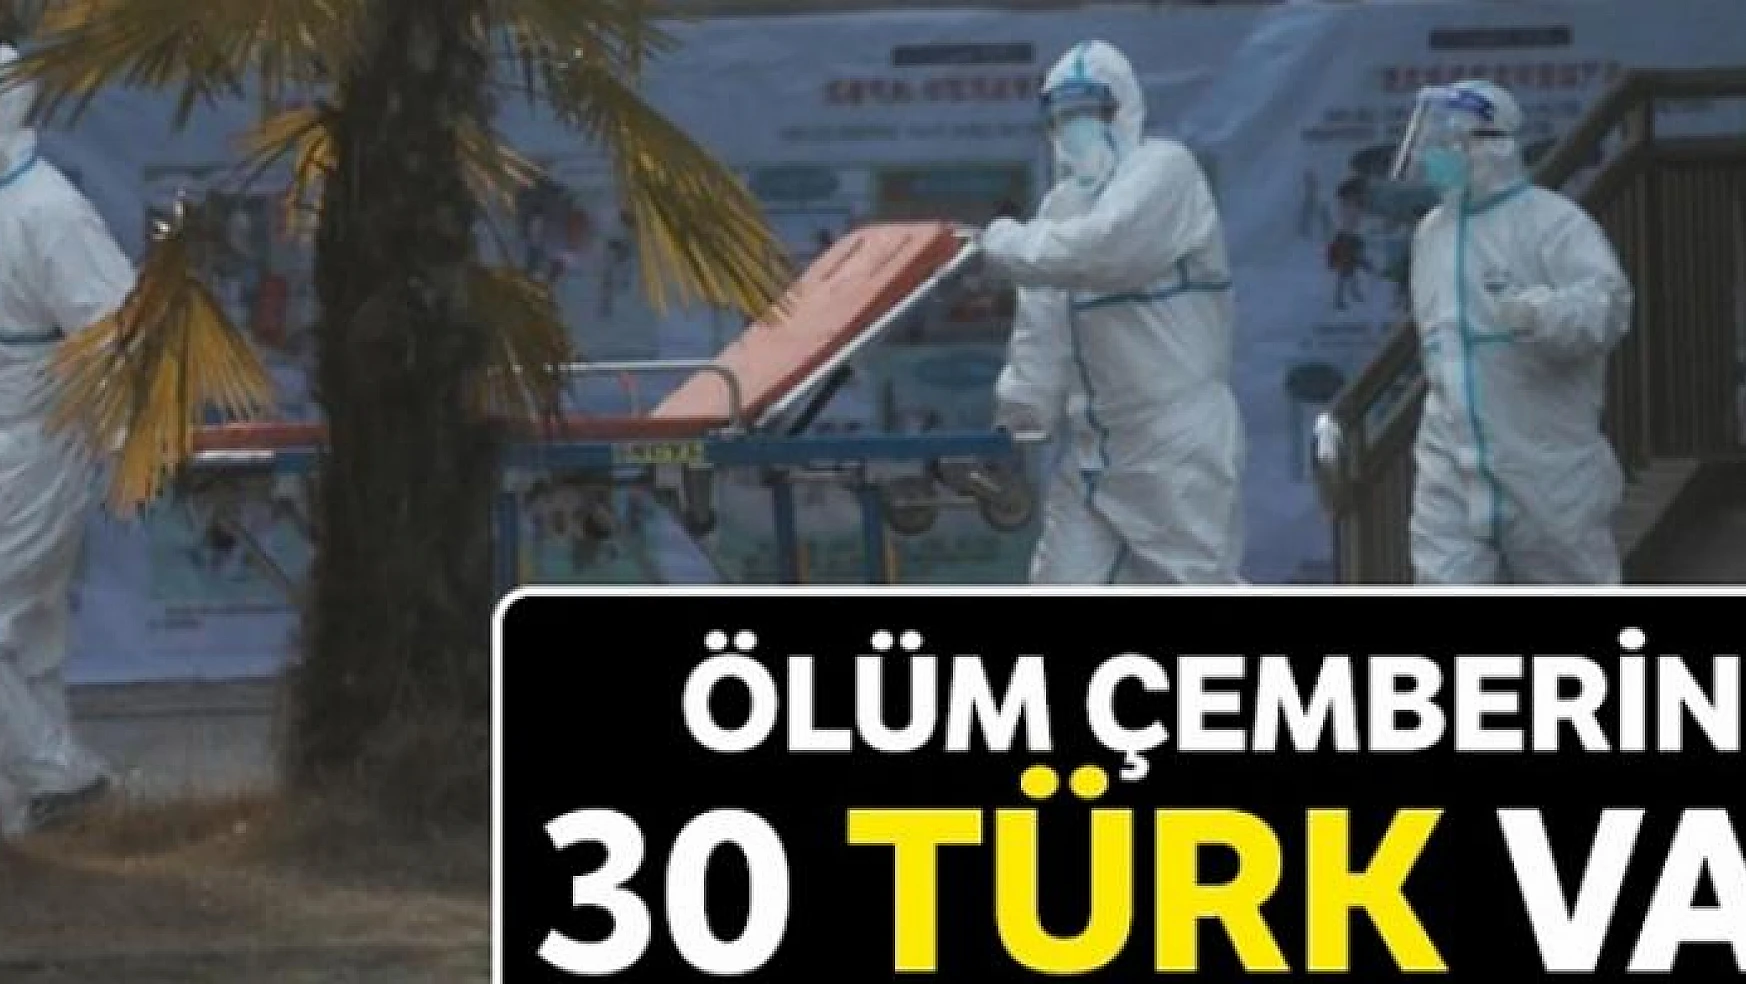 Ölüm çemberinde 30 Türk var